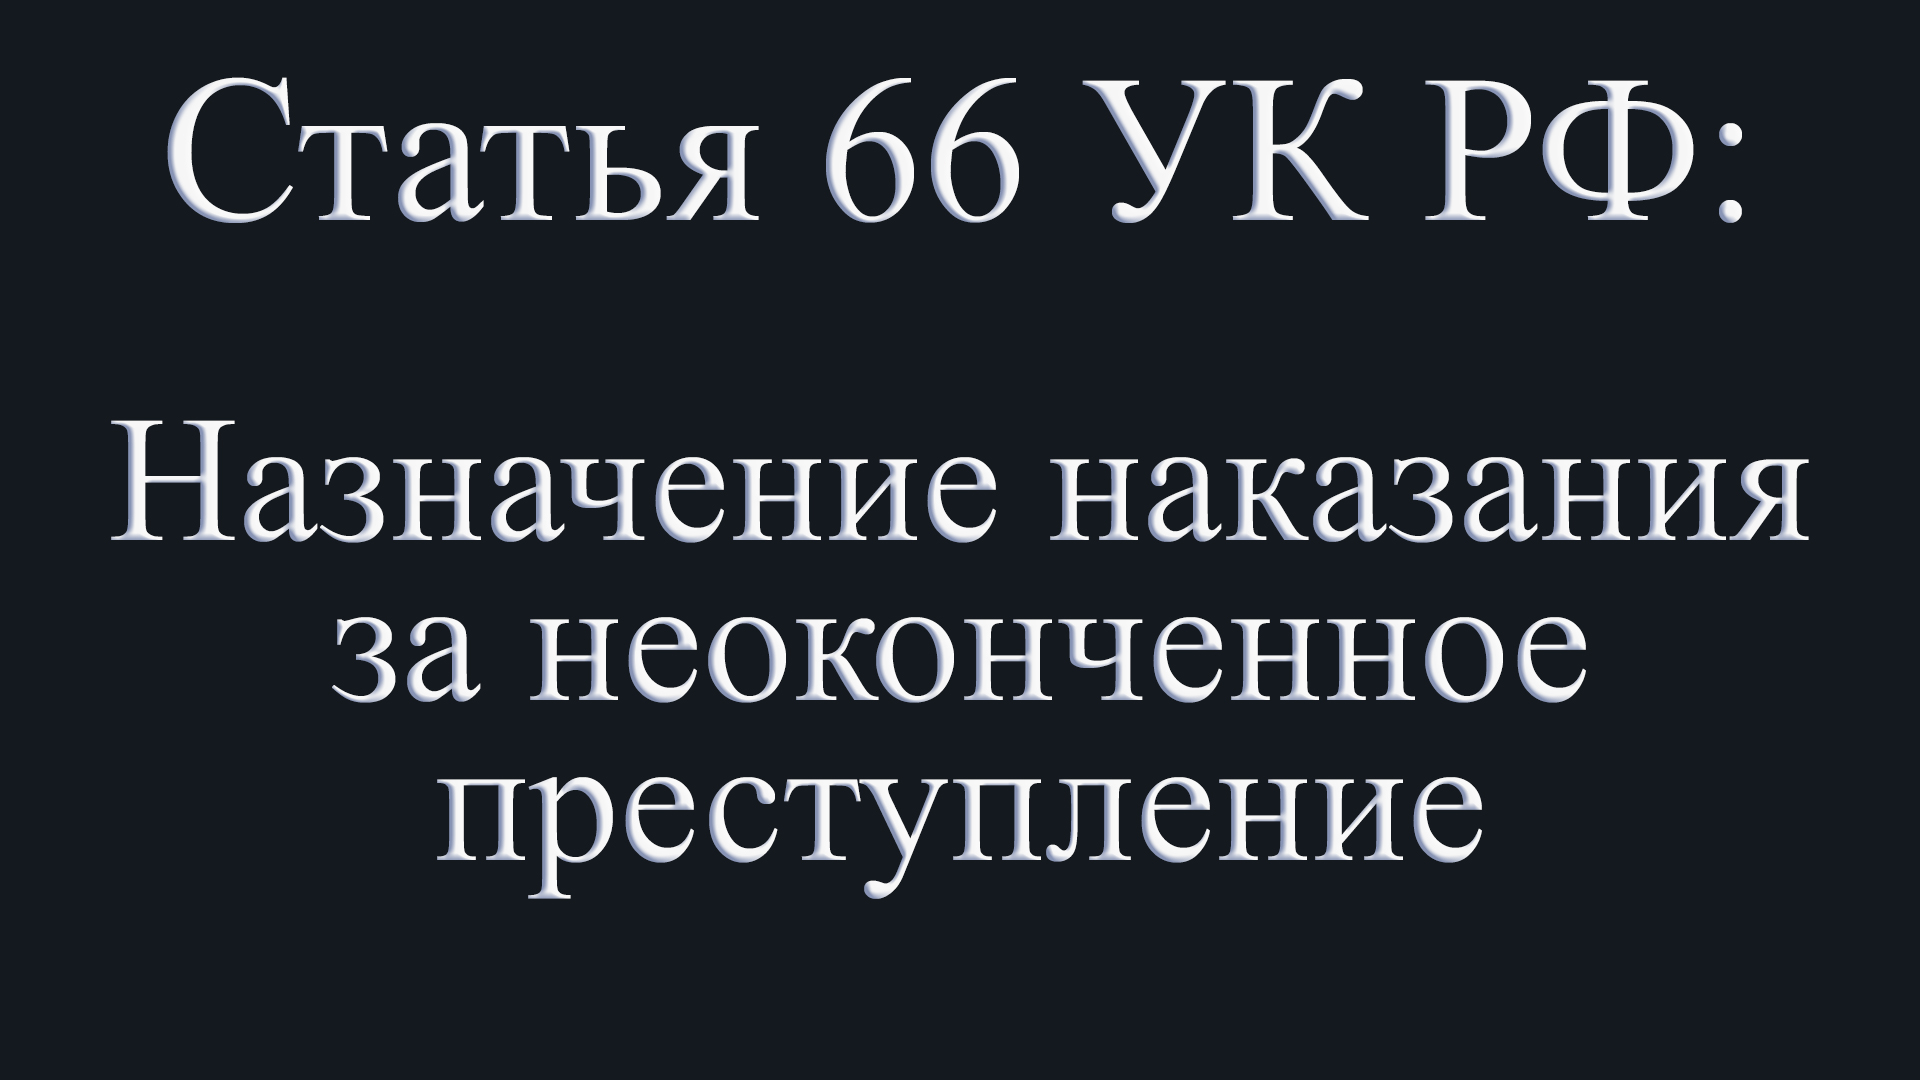 Статья 66 УК РФ: Назначение наказания за неоконченное преступление.